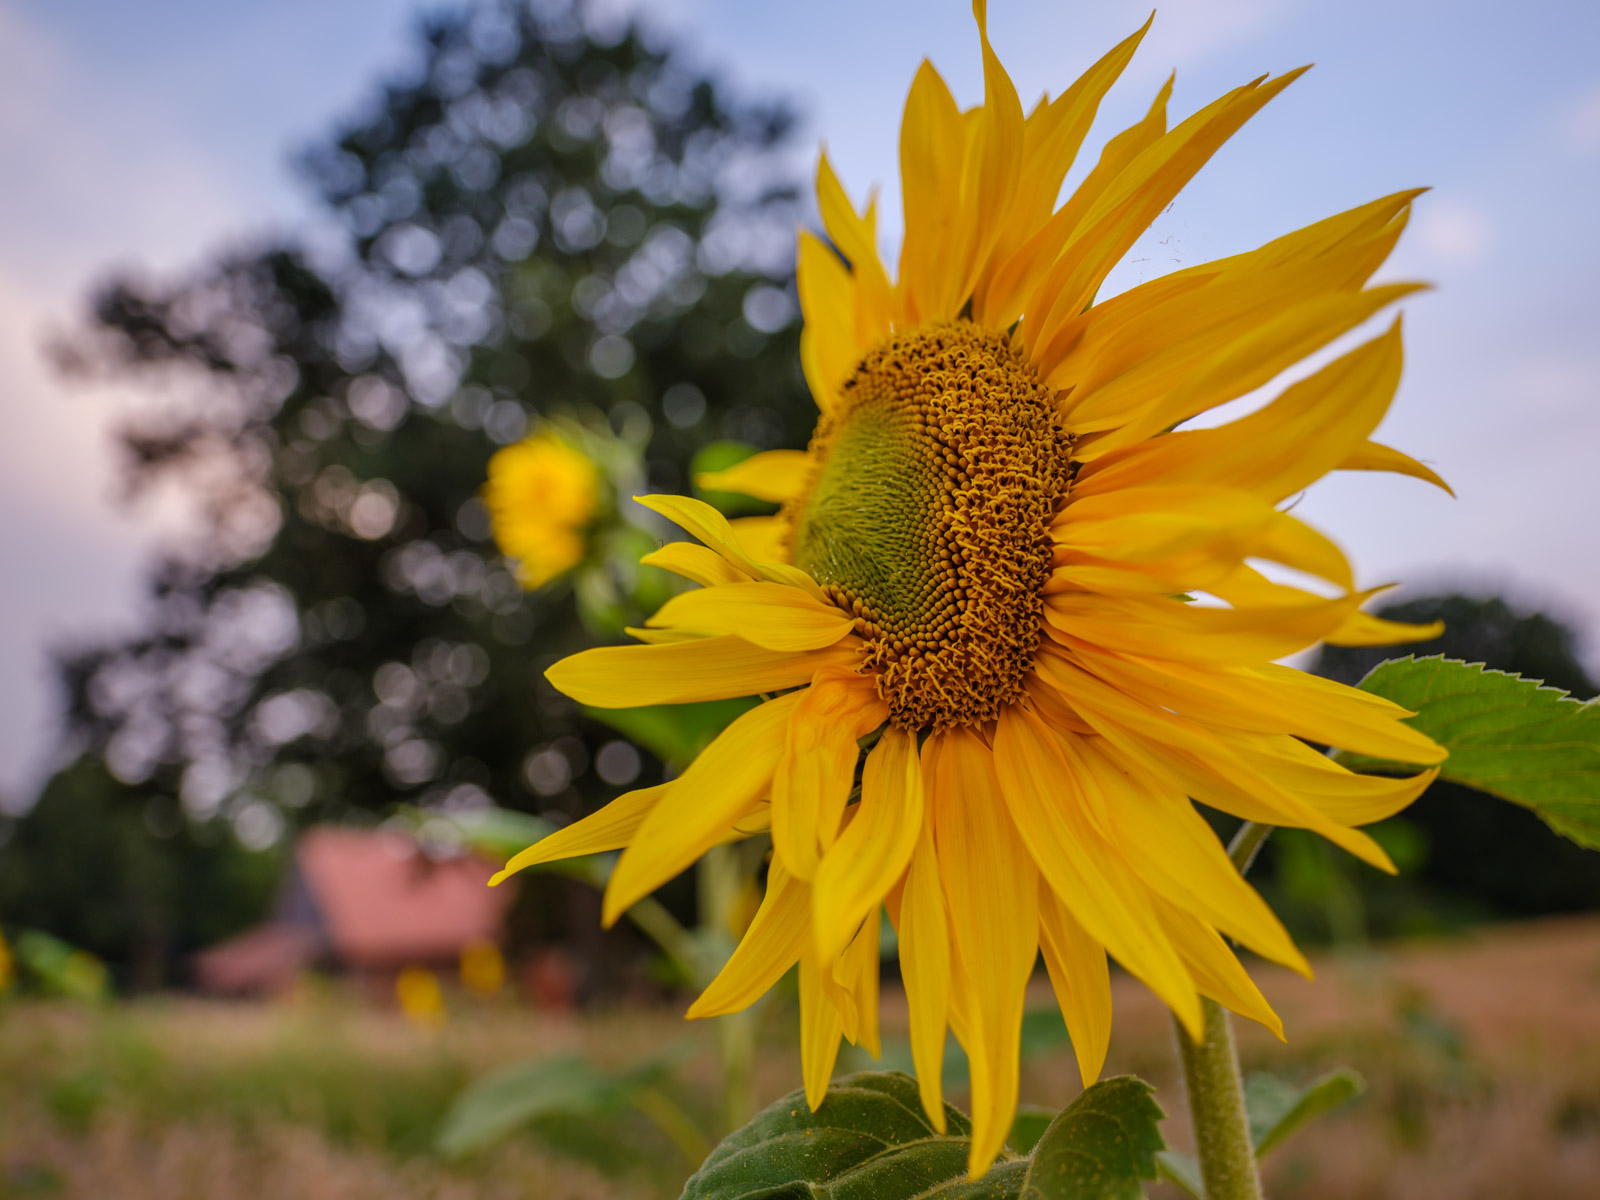 Sunflower in a field near the 'Meyerwald' on an evening in August 2020 (Bielefeld, Germany).